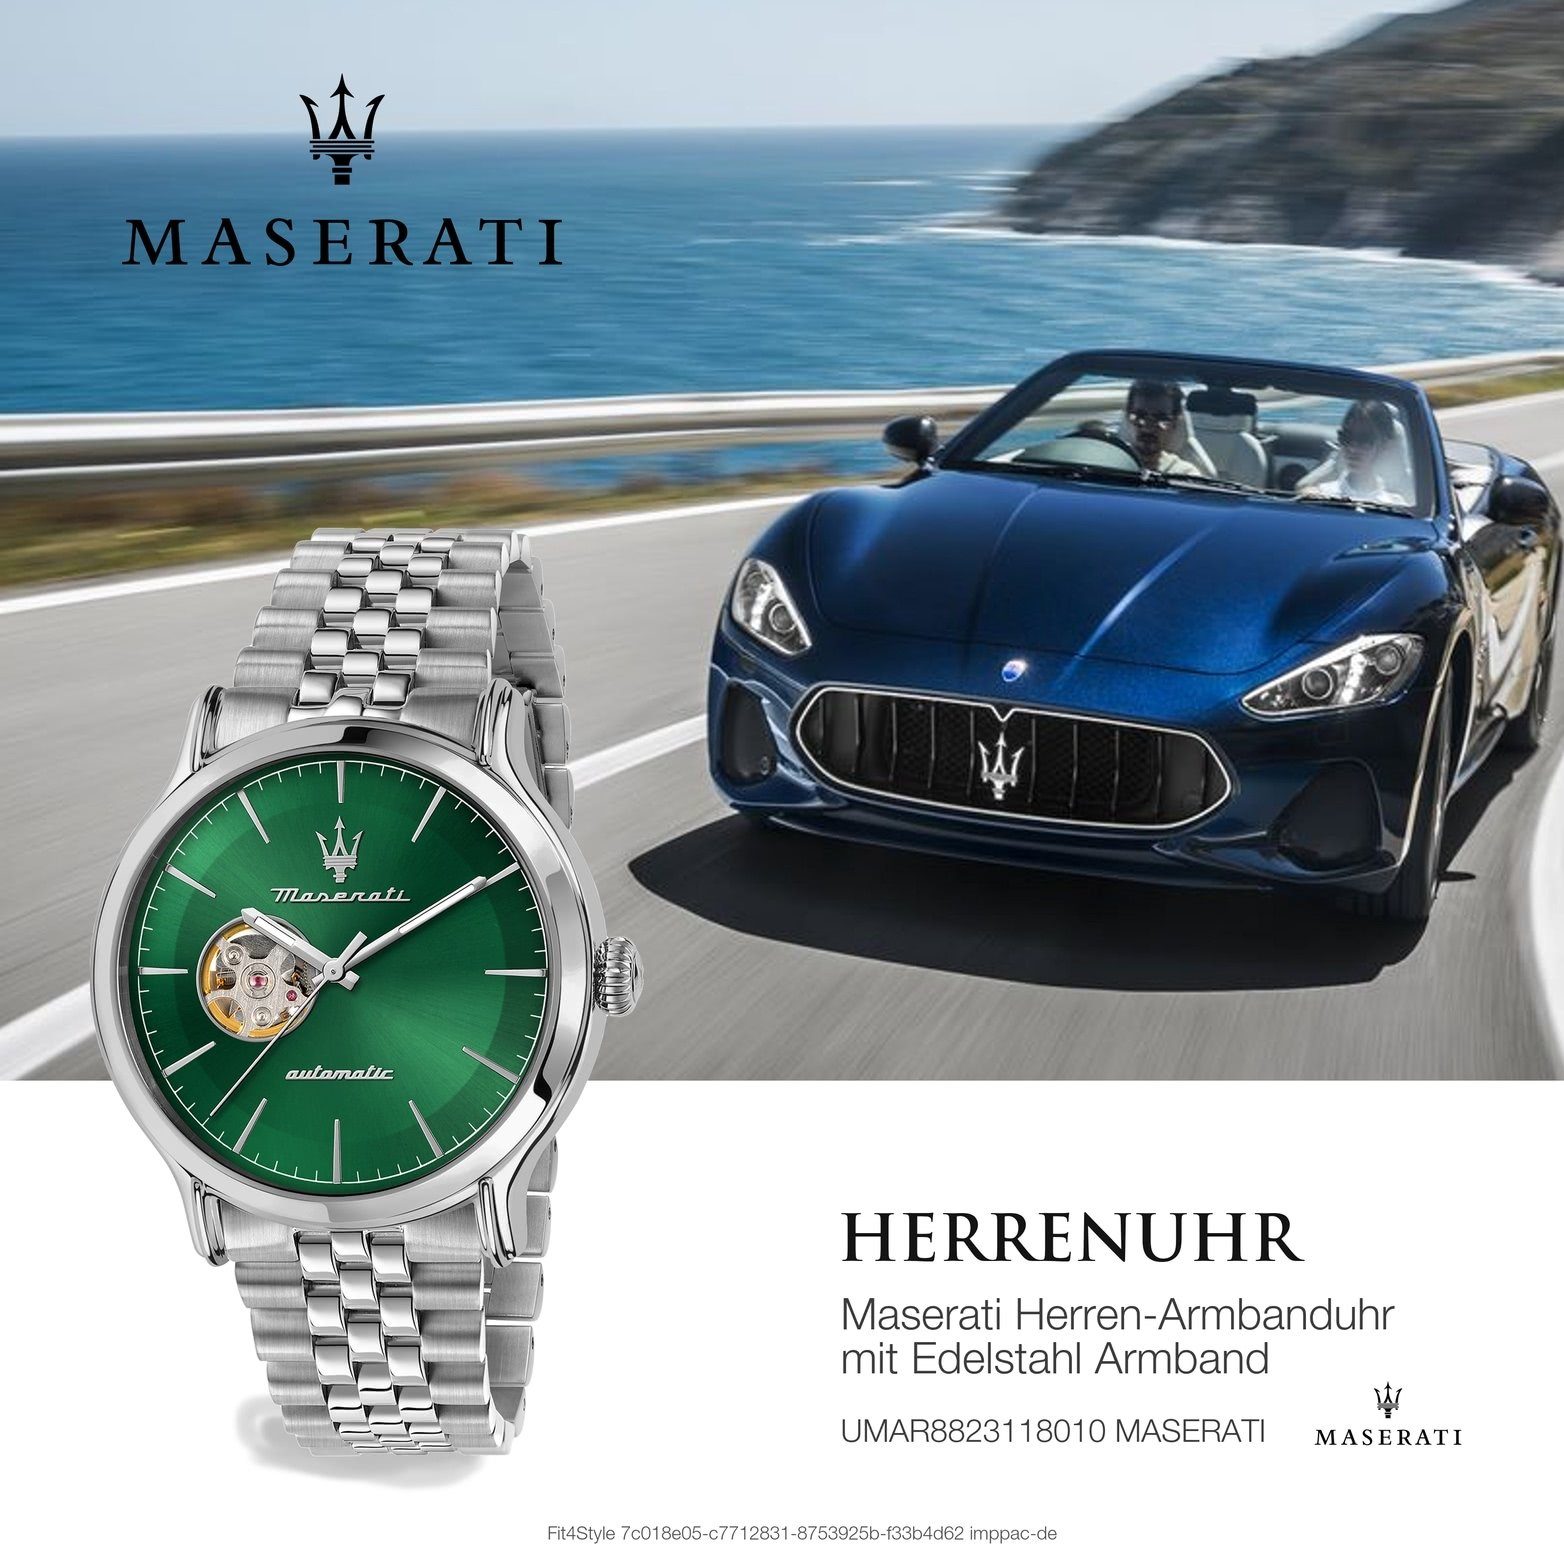 Herren Gehäuse, Edelstahlarmband, Herrenuhr Quarzuhr rundes Armbanduhr (ca. grau, Epoca, 42mm) grün groß MASERATI Maserati